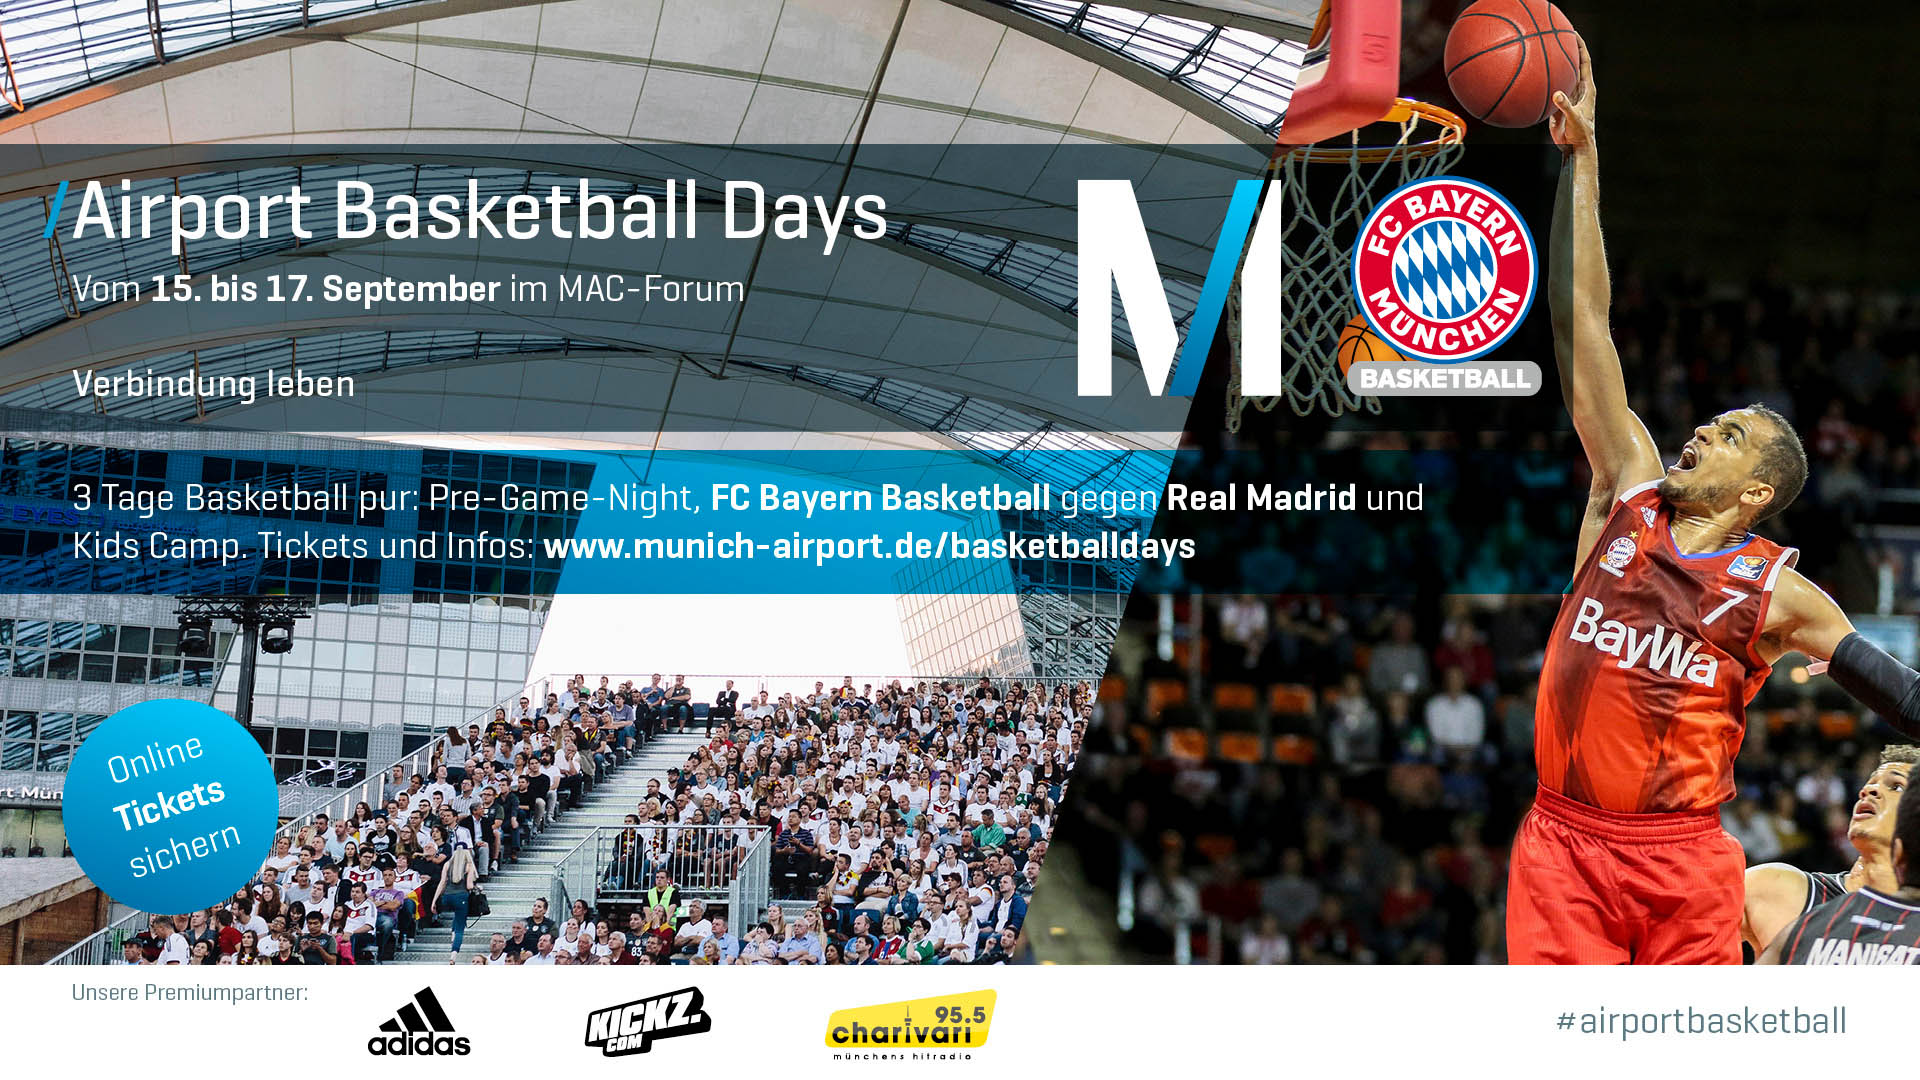 Airport Center München verwandelt sich in Basketball-Arena